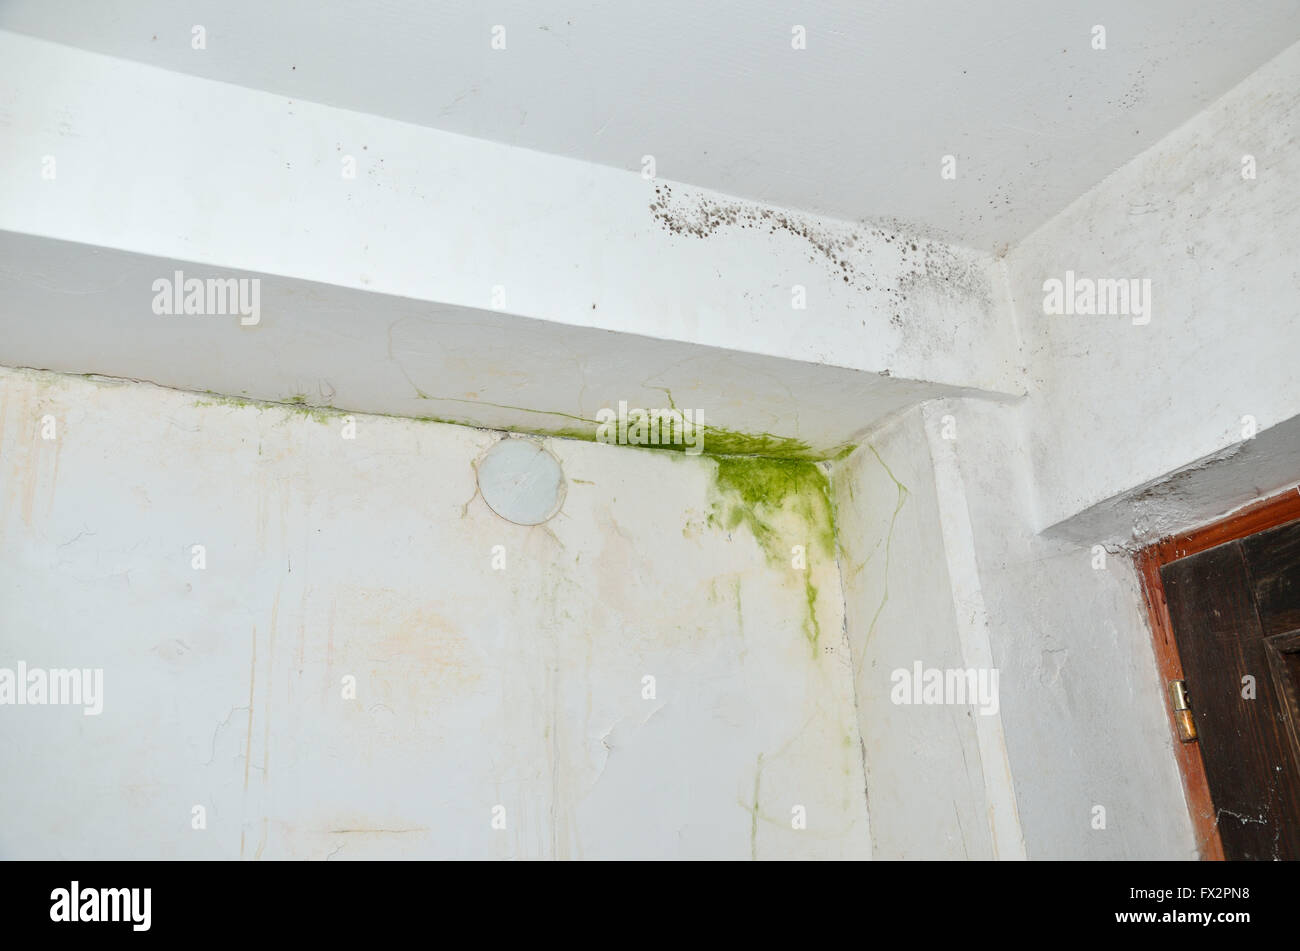 La moisissure grise et verte au coin de mur et plafond blanc Banque D'Images